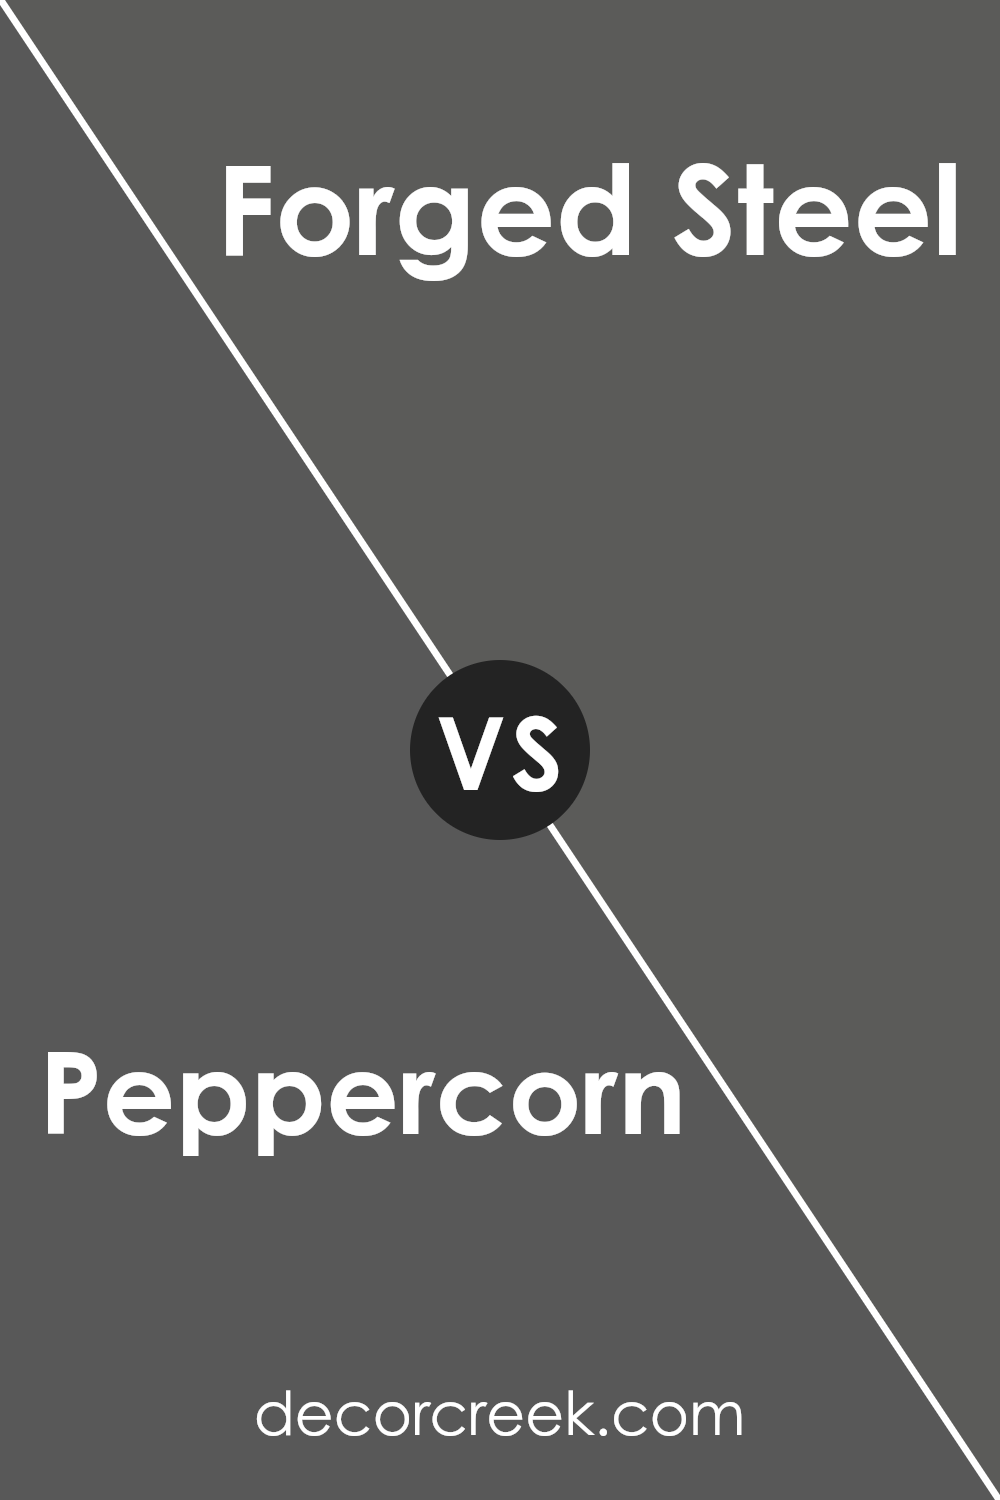 peppercorn_sw_7674_vs_forged_steel_sw_9565